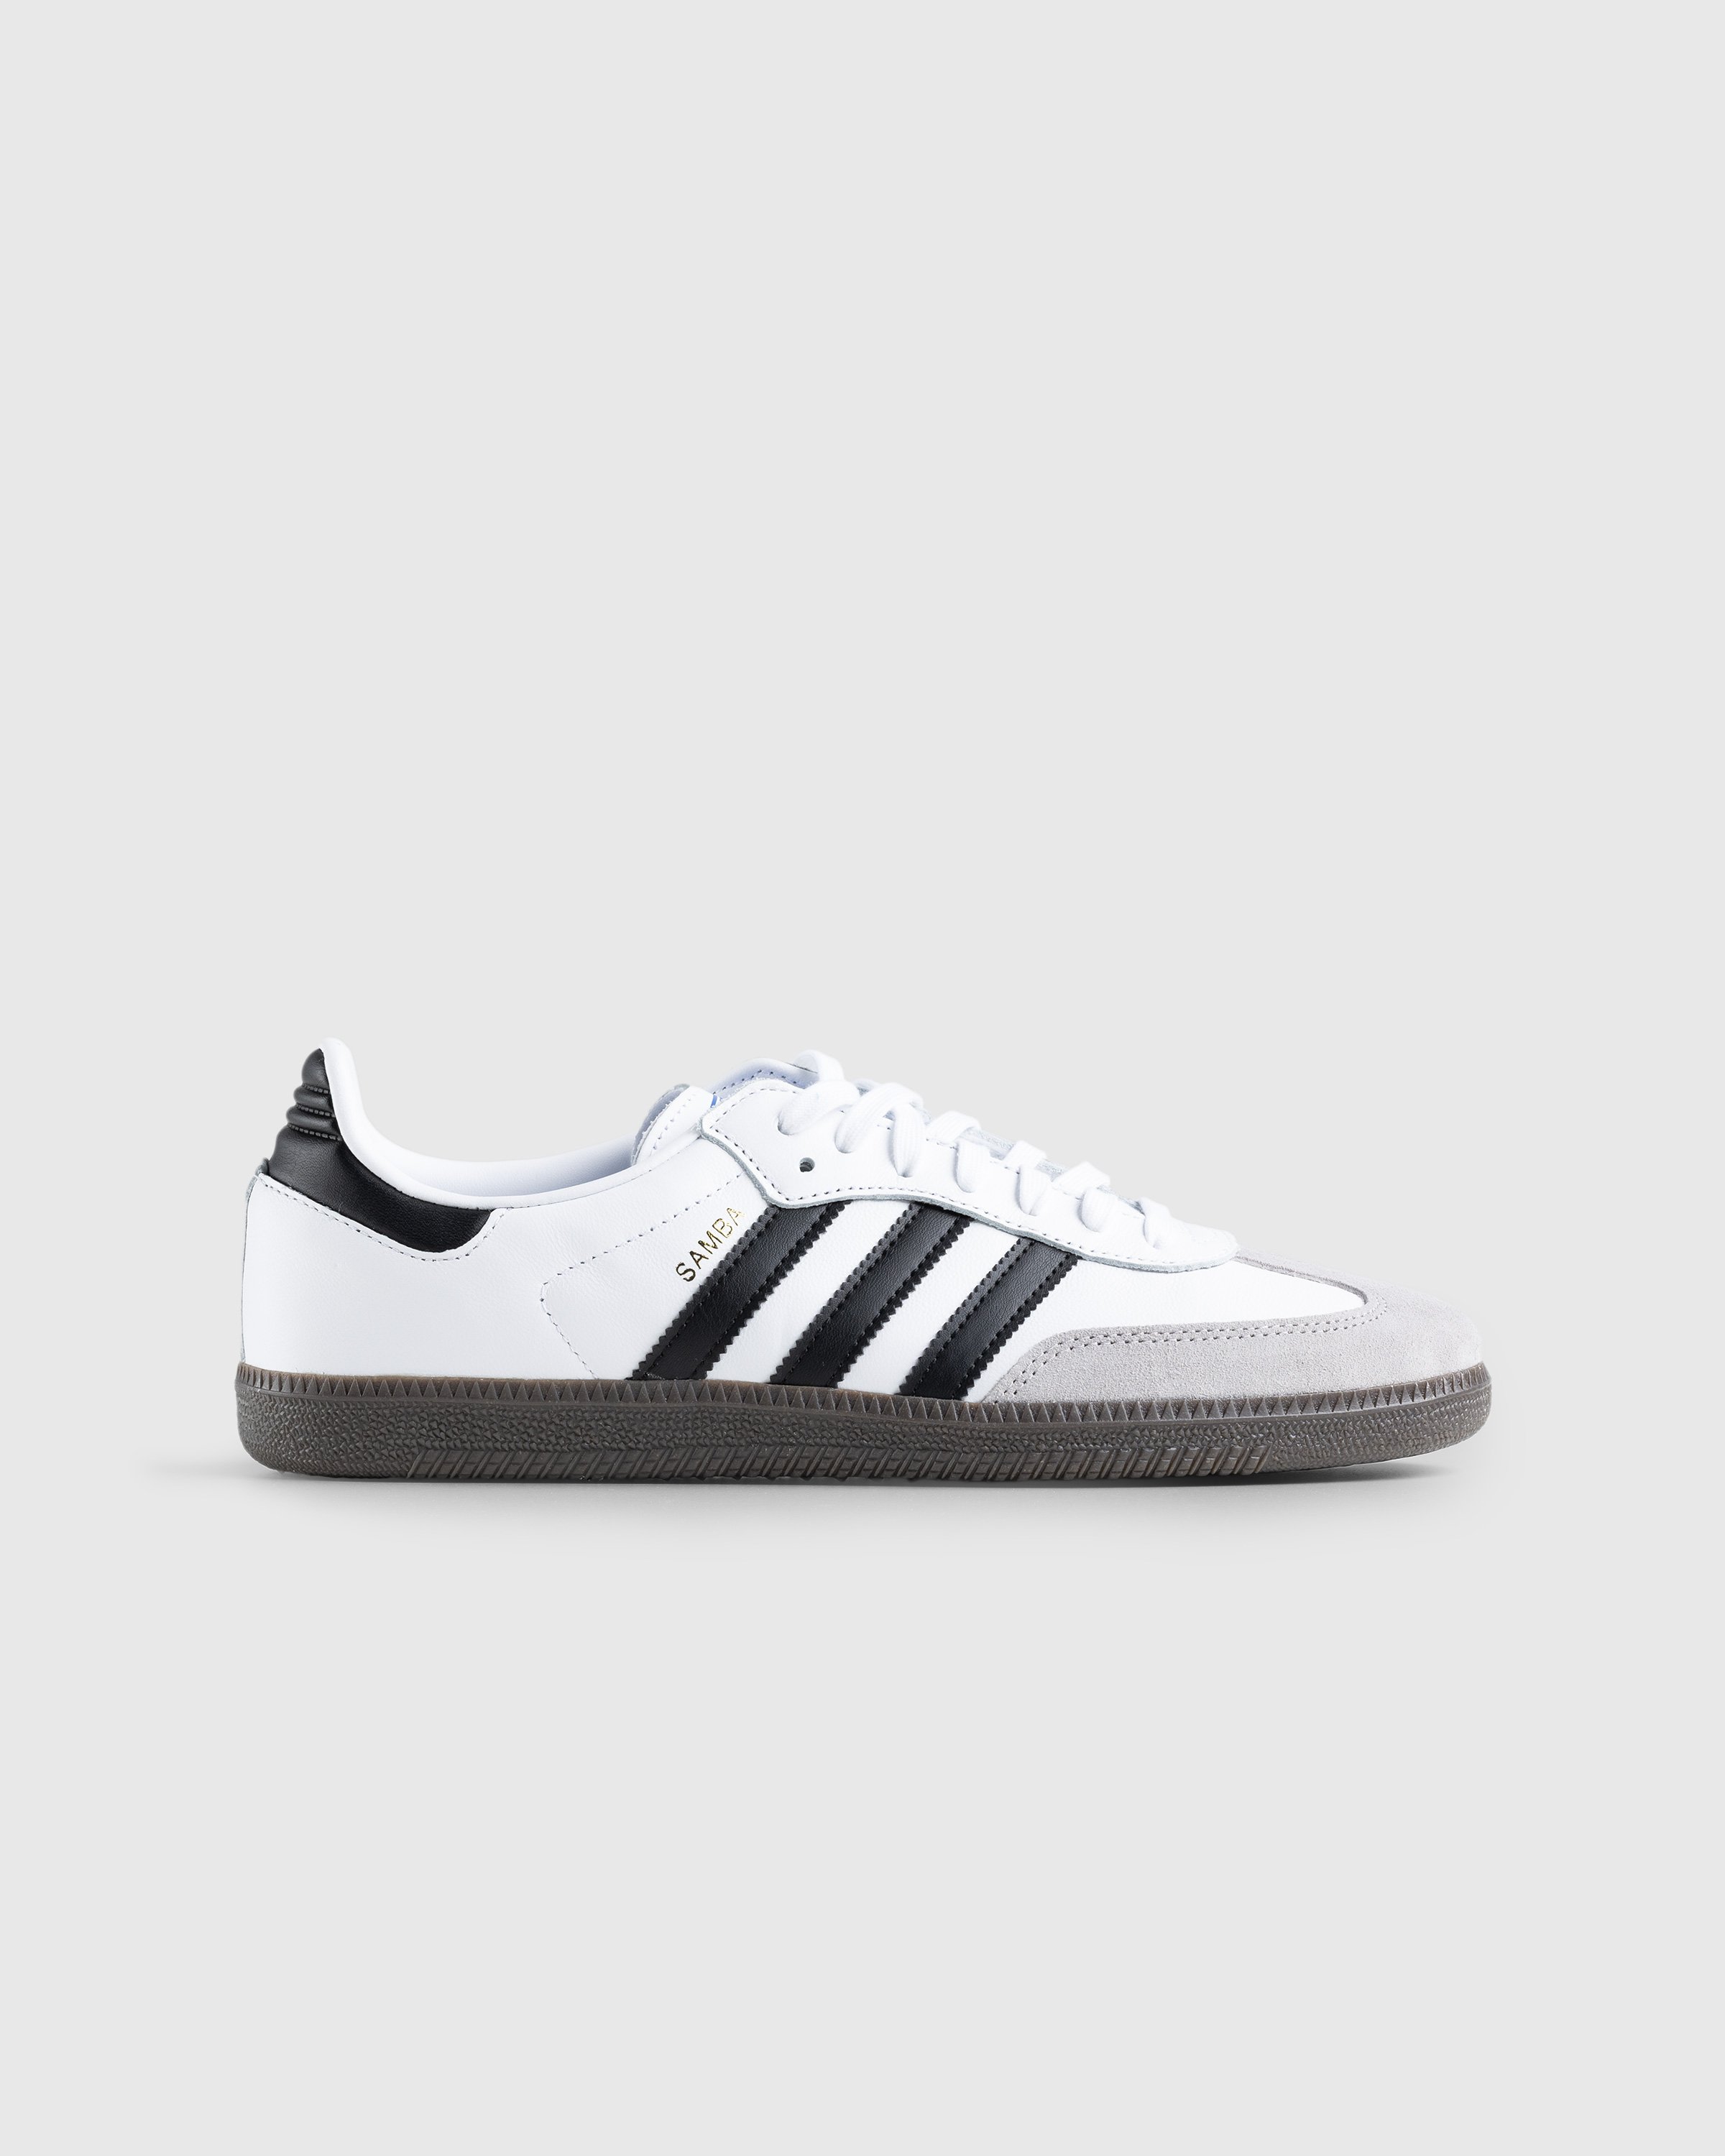 Adidas - Samba OG White - Footwear - White - Image 1